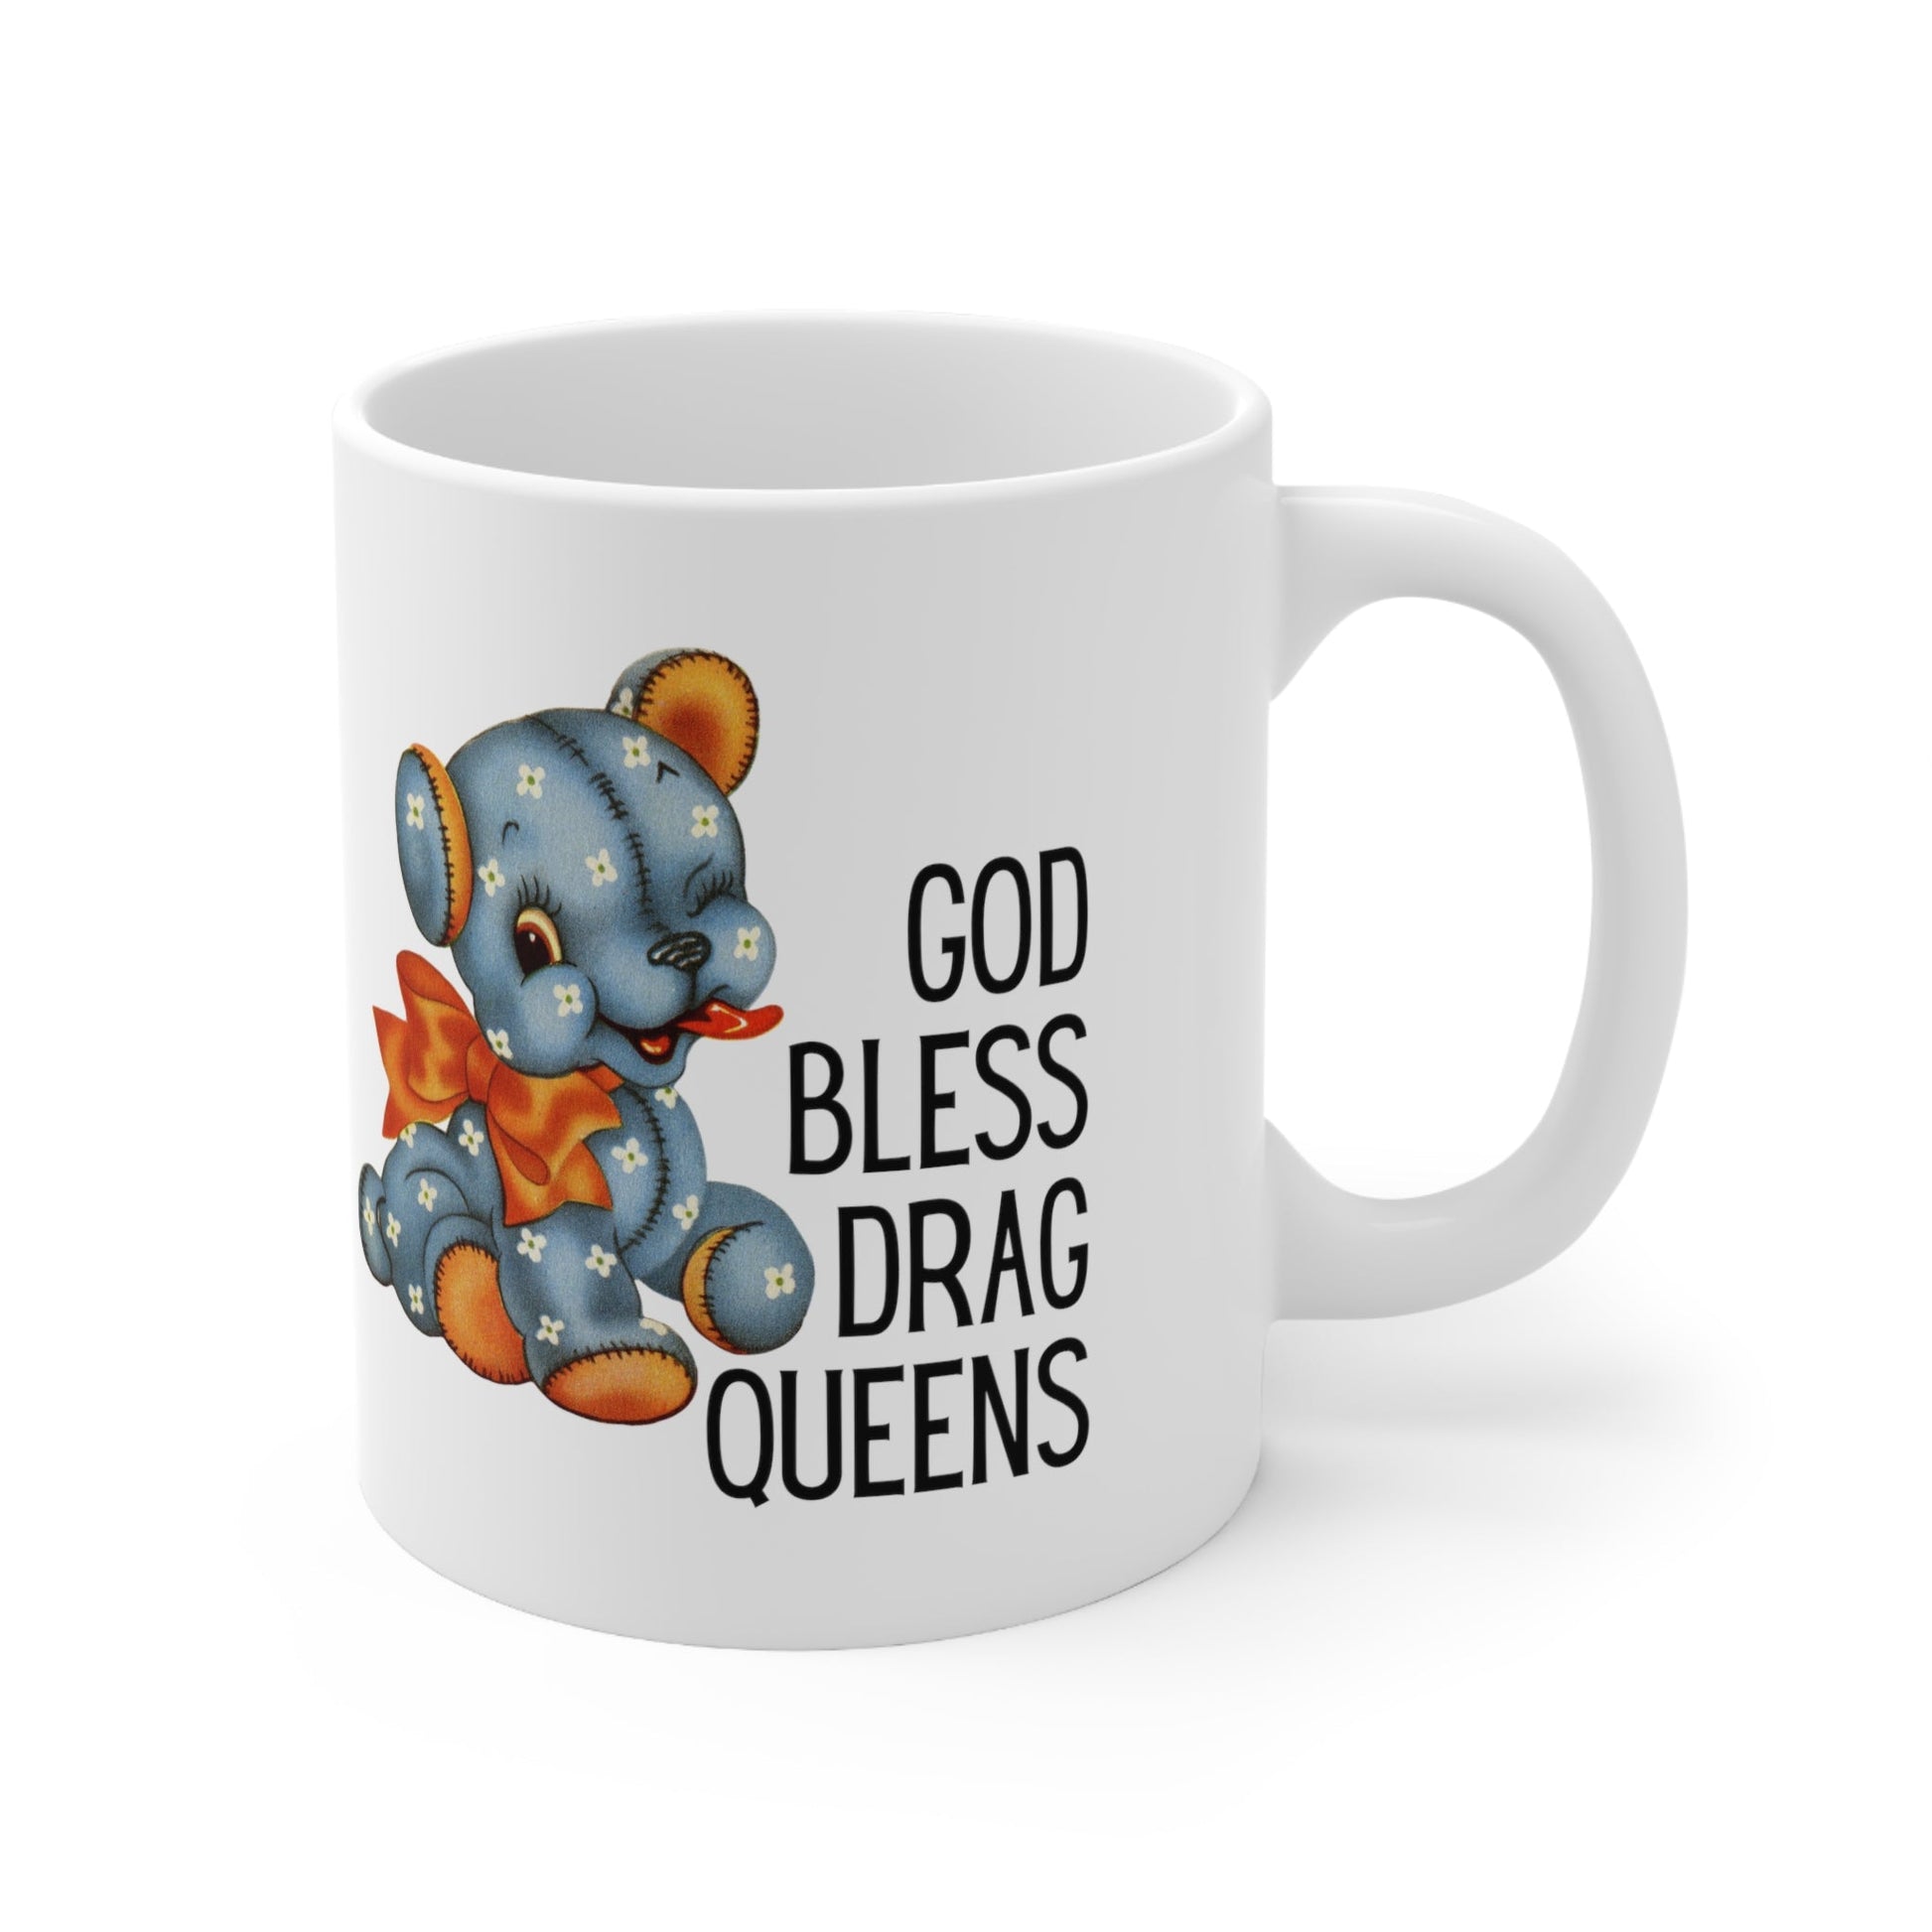 God Bless Drag Queens Ceramic Mug 11oz